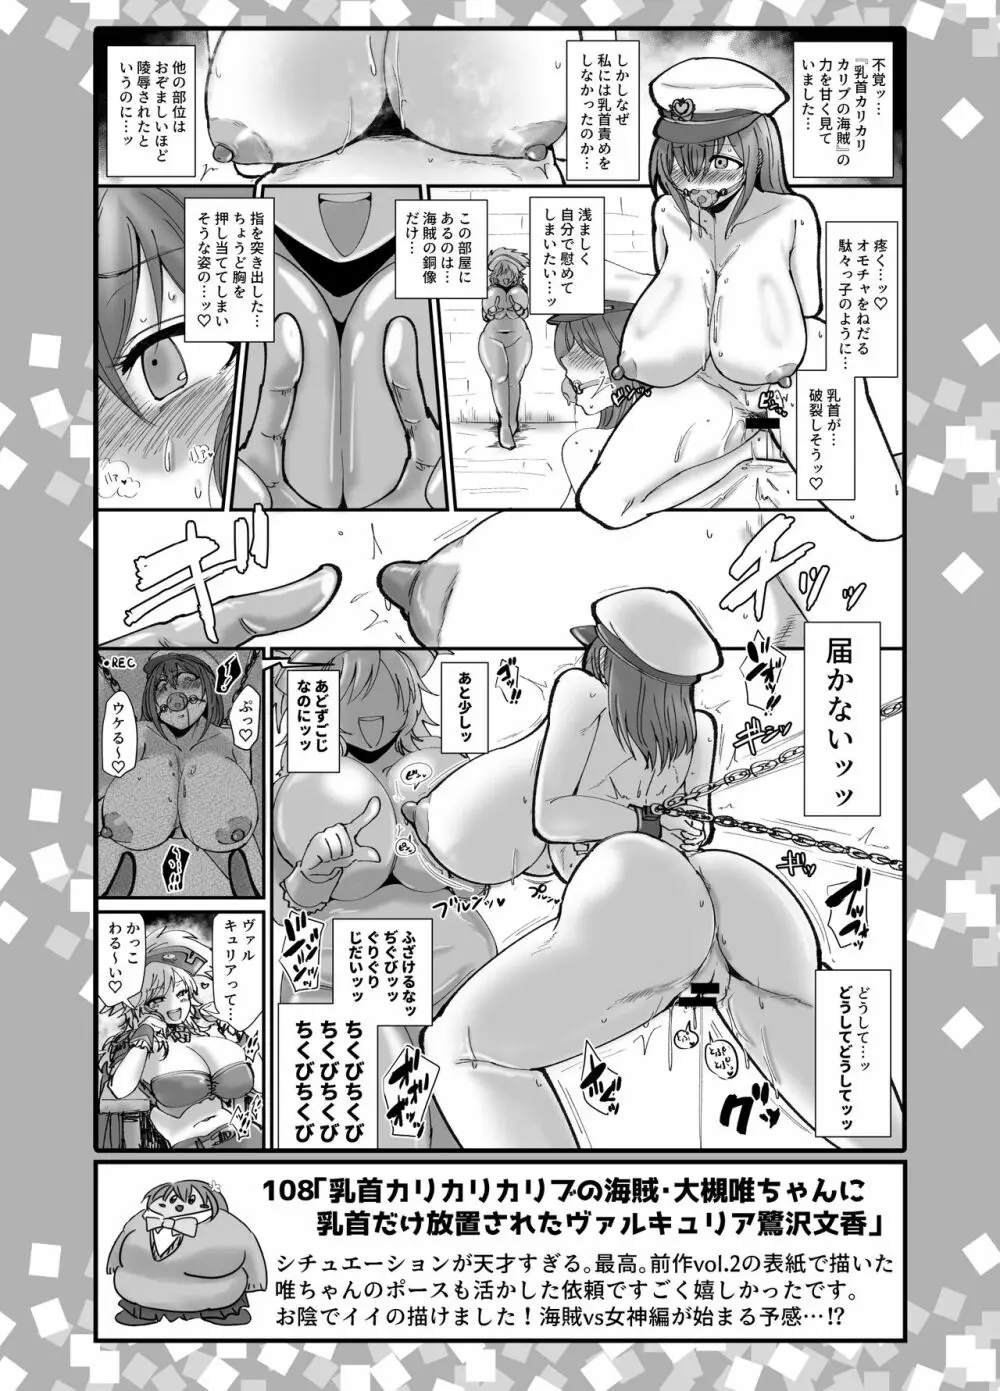 SKB48 vol.3 - page14